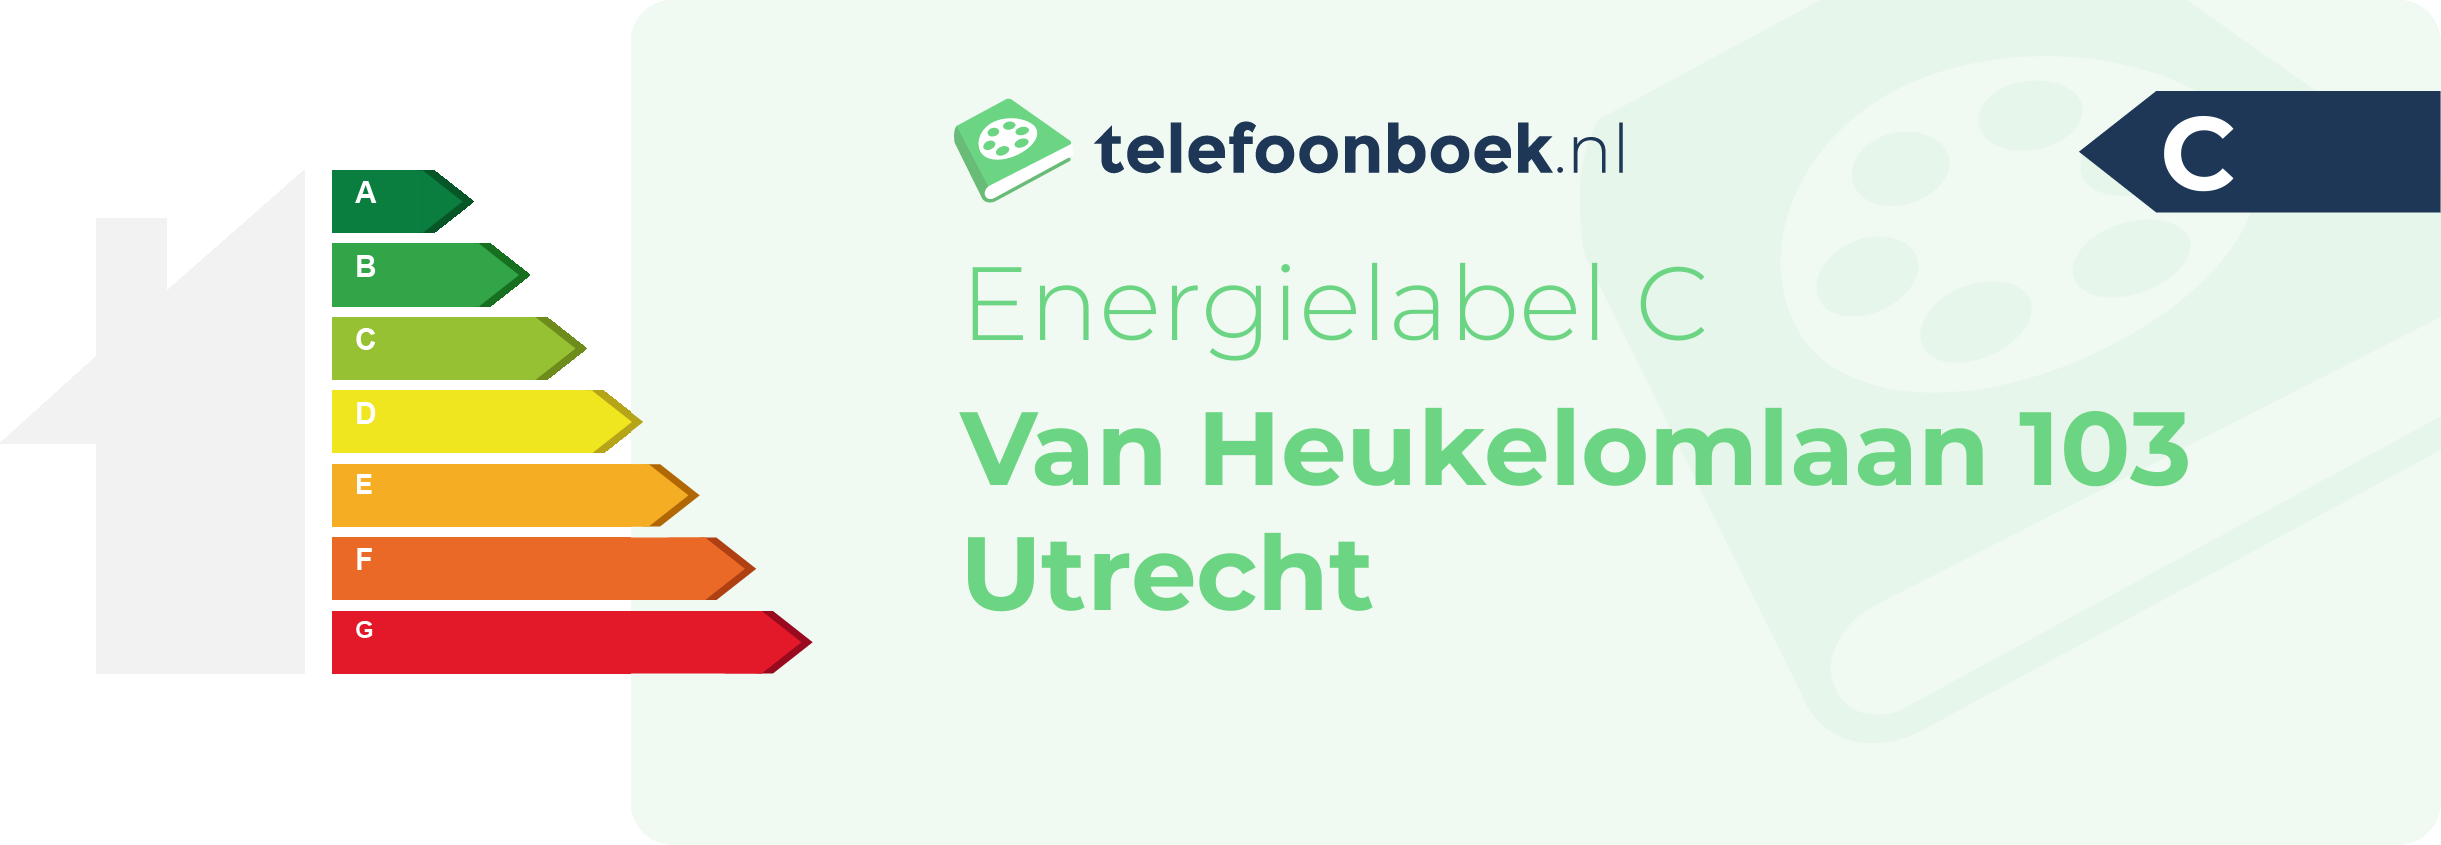 Energielabel Van Heukelomlaan 103 Utrecht